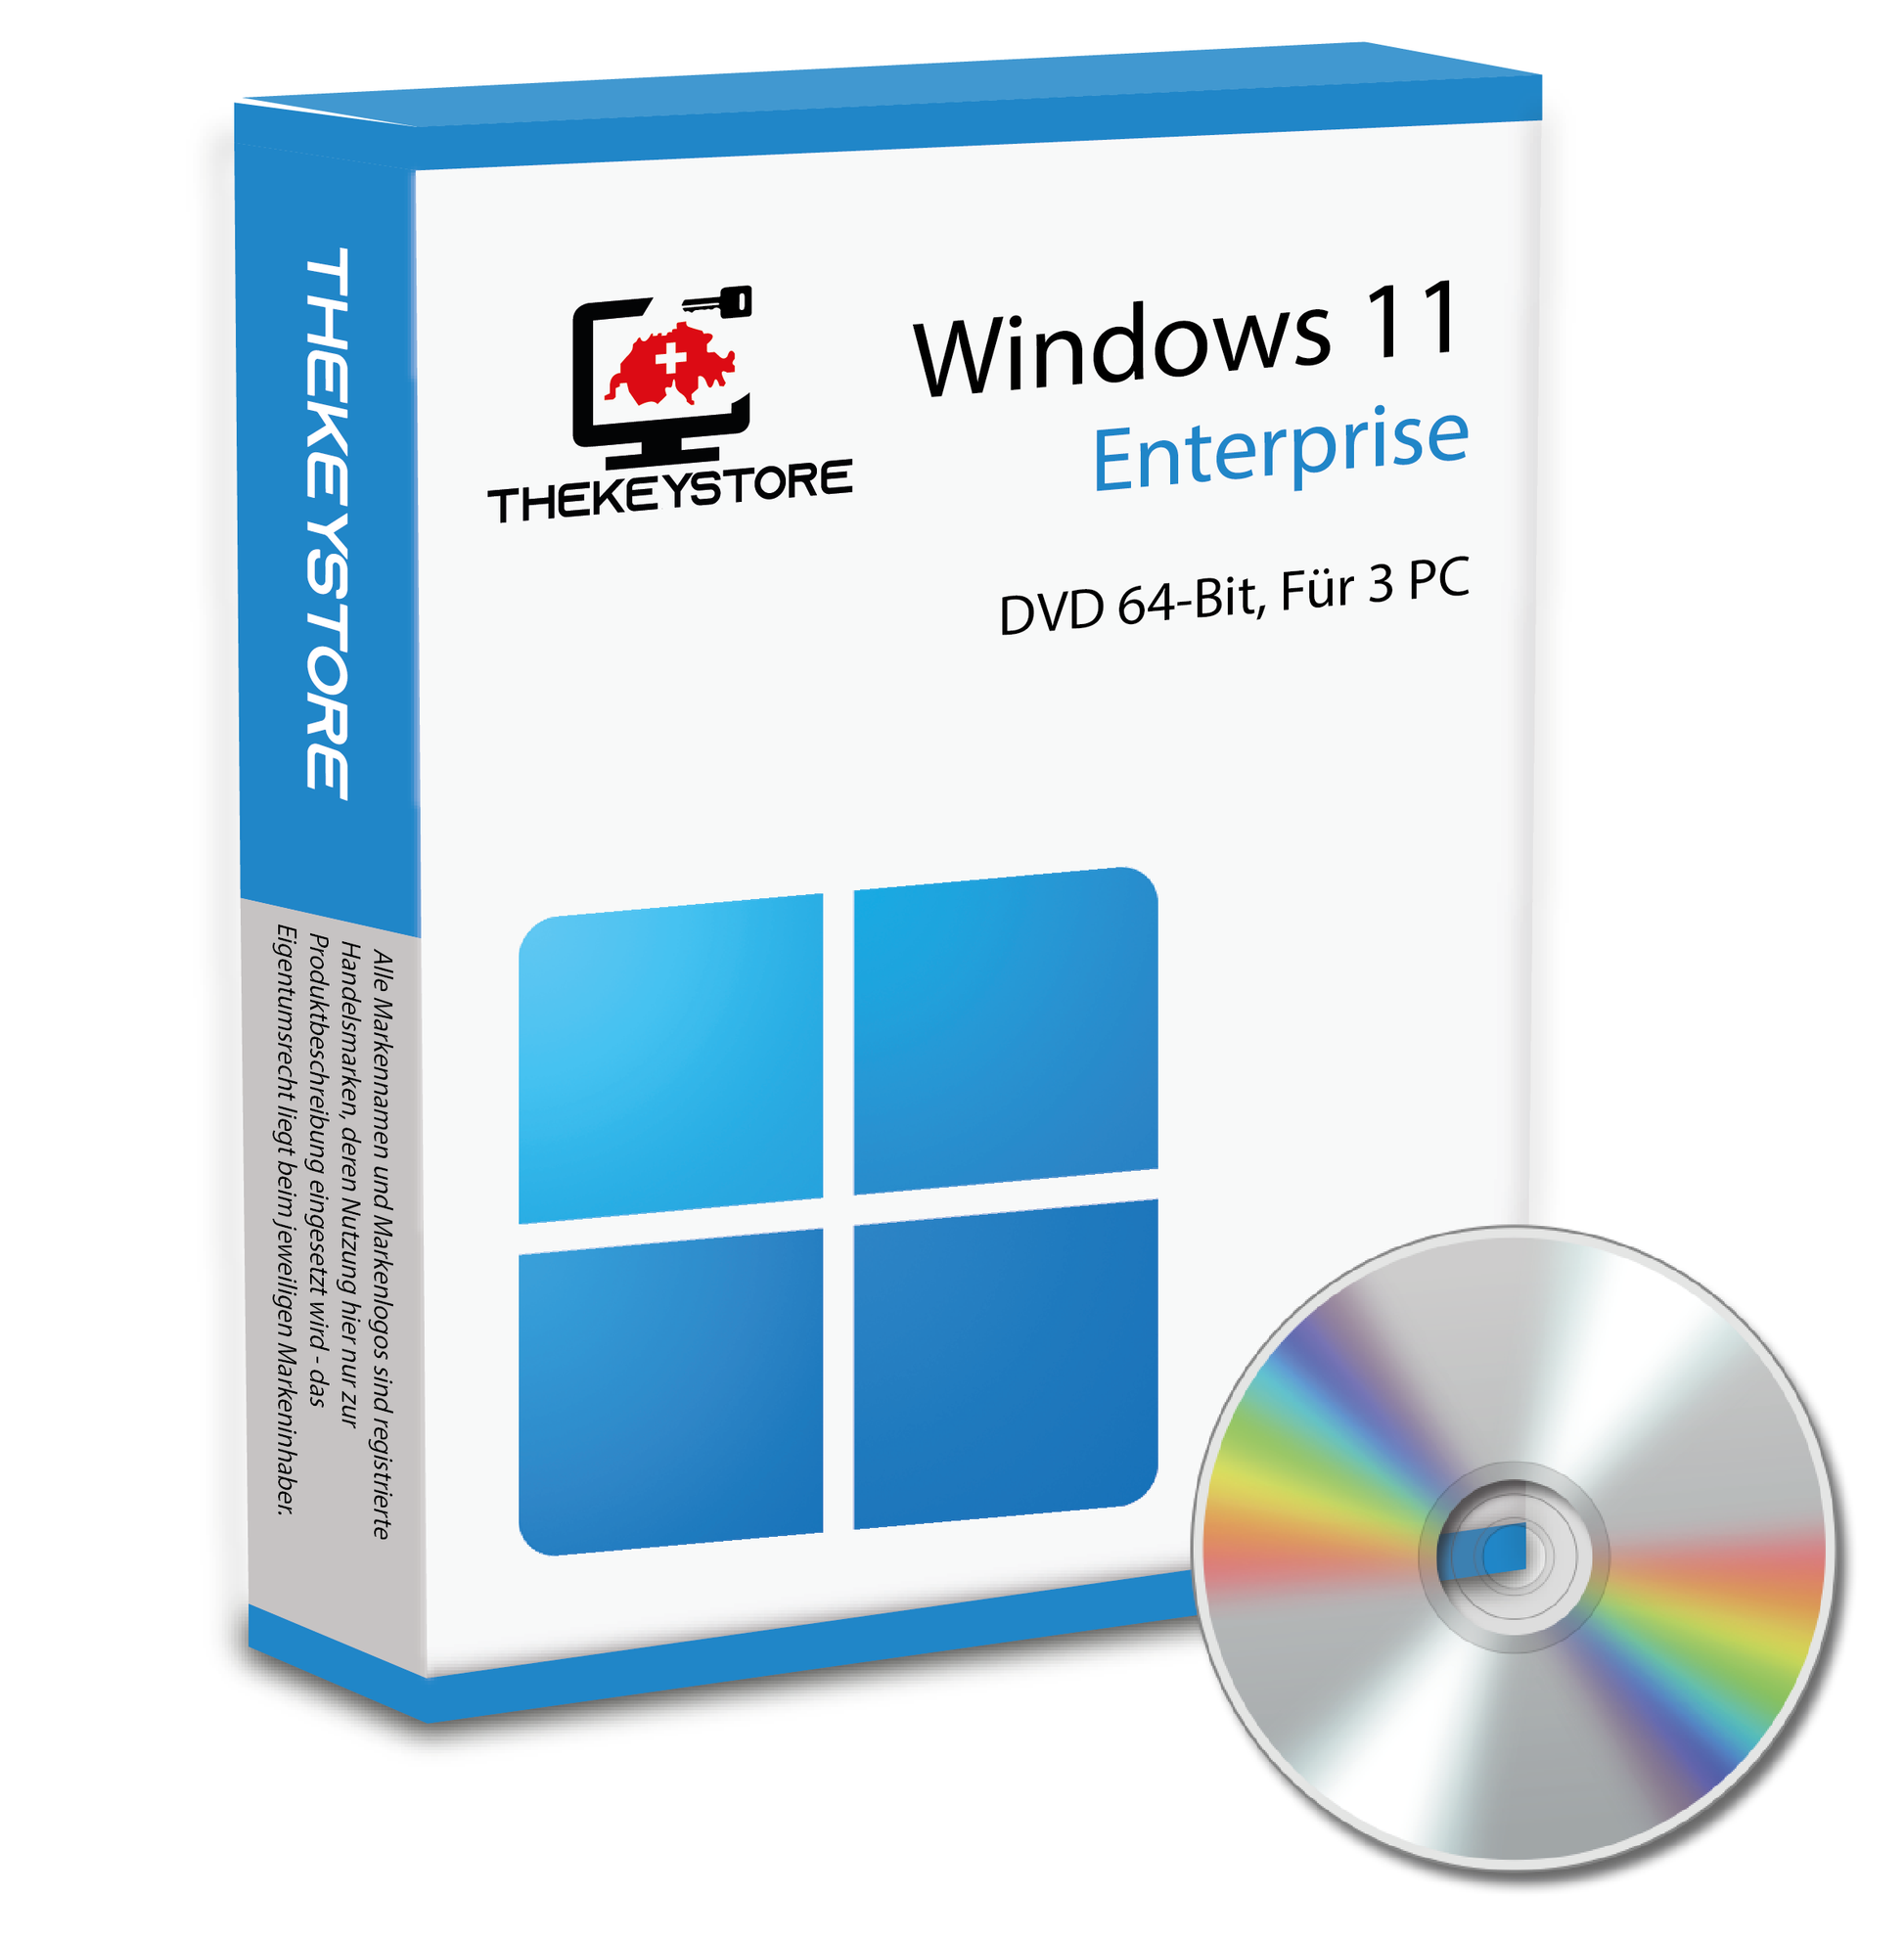 Microsoft Windows 11 Enterprise - Für 3 PC - TheKeyStore Schweiz